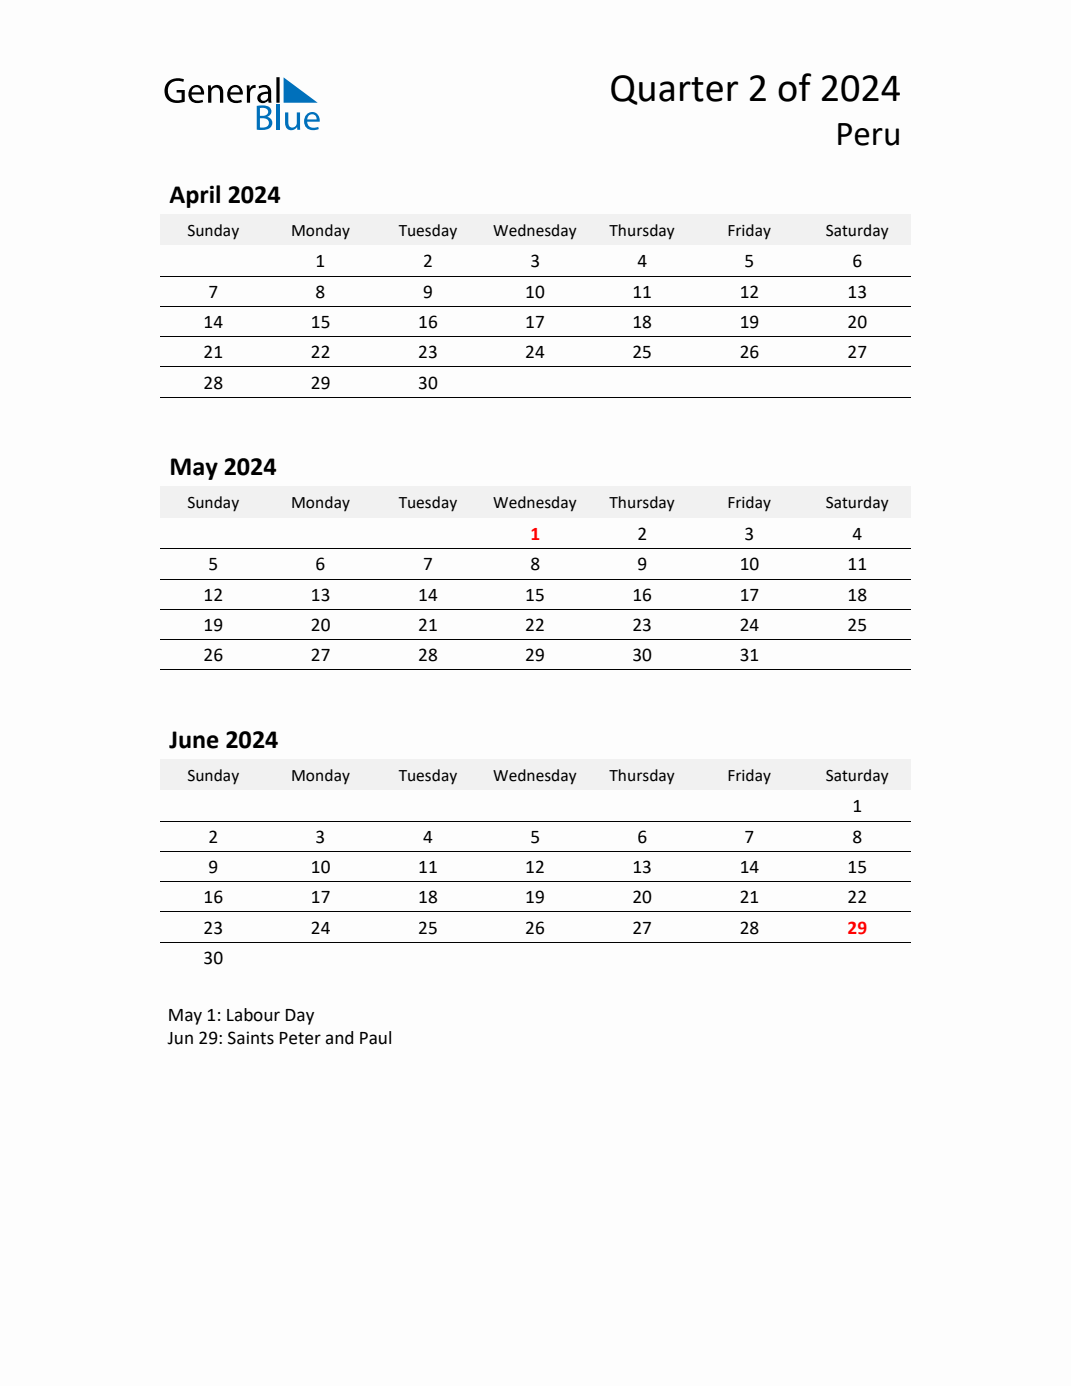 Q2 2024 Quarterly Calendar with Peru Holidays